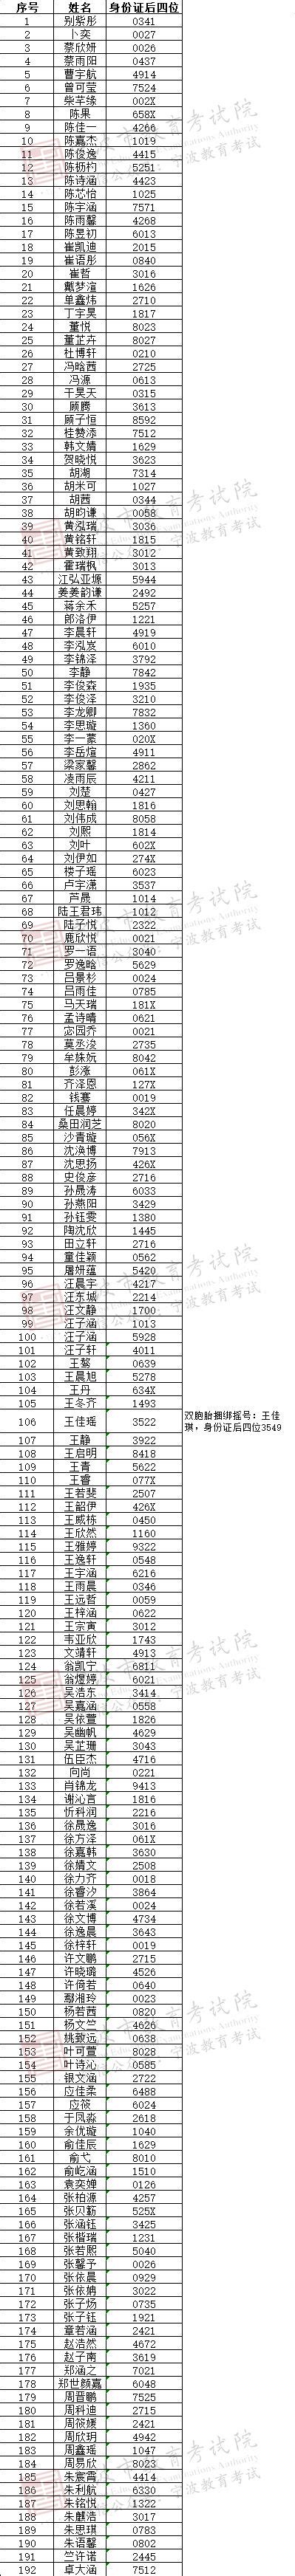 2022年宁波外国语学校、兴宁中学电脑派位结果公布-新闻中心-中国宁波网